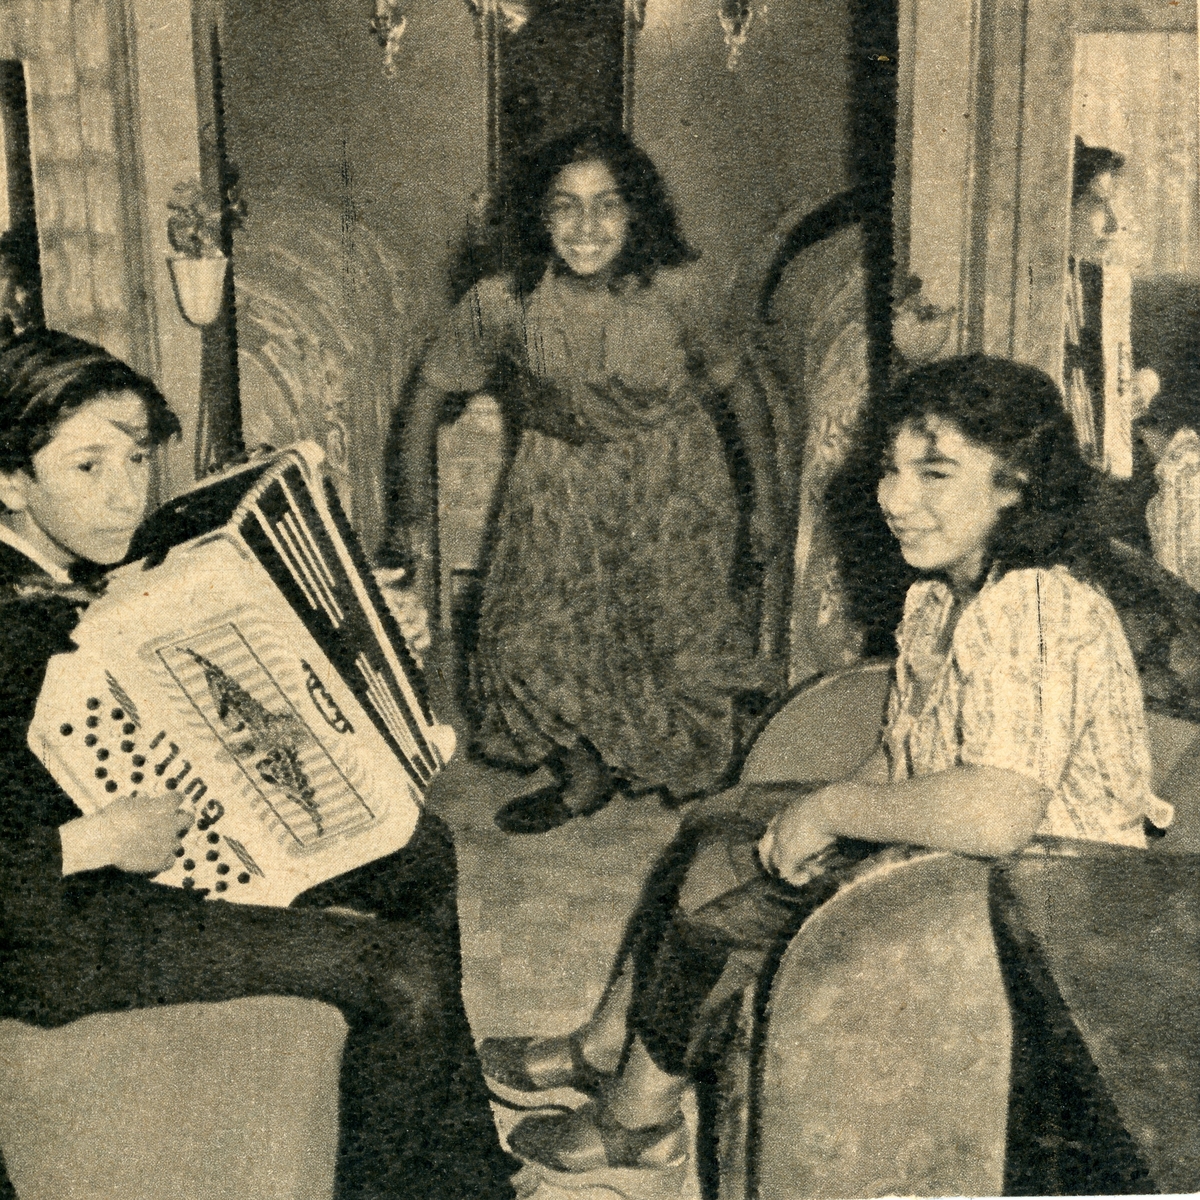 En pojke med dragspel i famnen spelar för två flickor i en bostadsvagn. Att vara musikant har historiskt varit ett vanligt yrke bland romer i Sverige, såväl som handel och försäljning av musikinstrument. Musicerandet har ofta kombinerats med tivoliverksamhet, teater eller lustspel av olika slag. Dessa verksamheter mötte en kraftig nedgång i och med tevens genomslag under 1950- och 1960-talen.